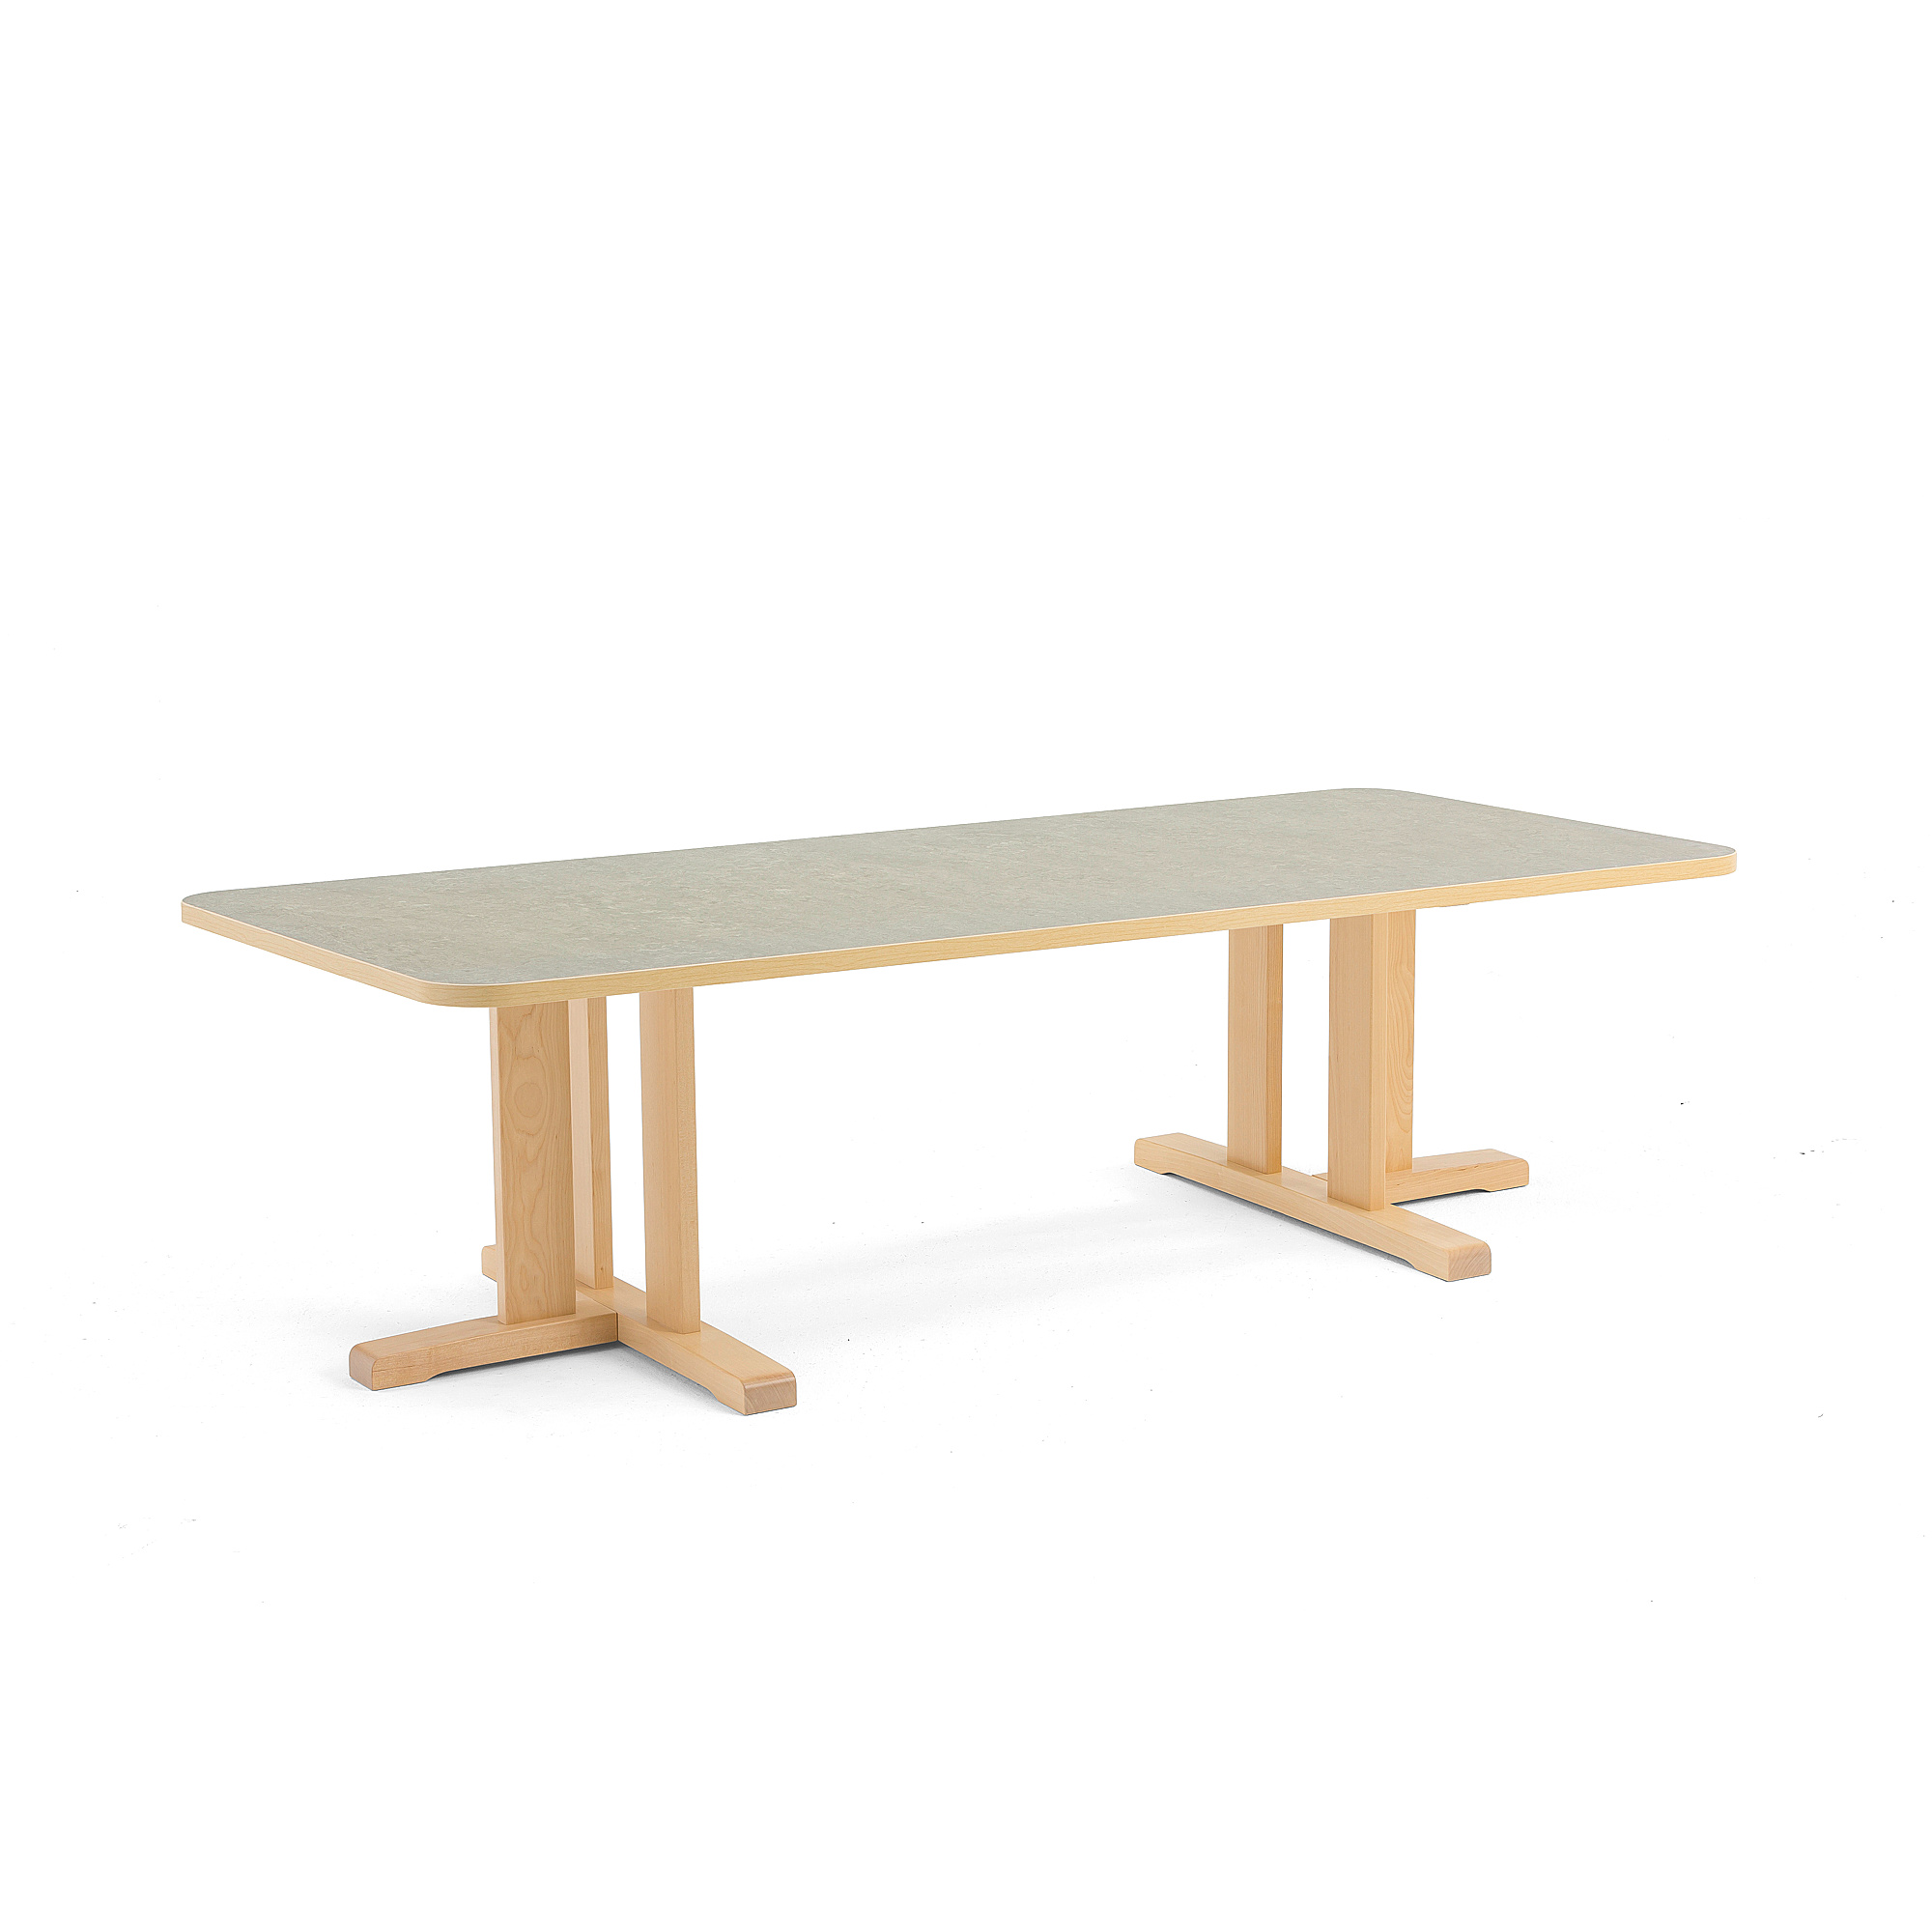 Stůl KUPOL, 1800x800x500 mm, obdélník, akustické linoleum, bříza/šedá